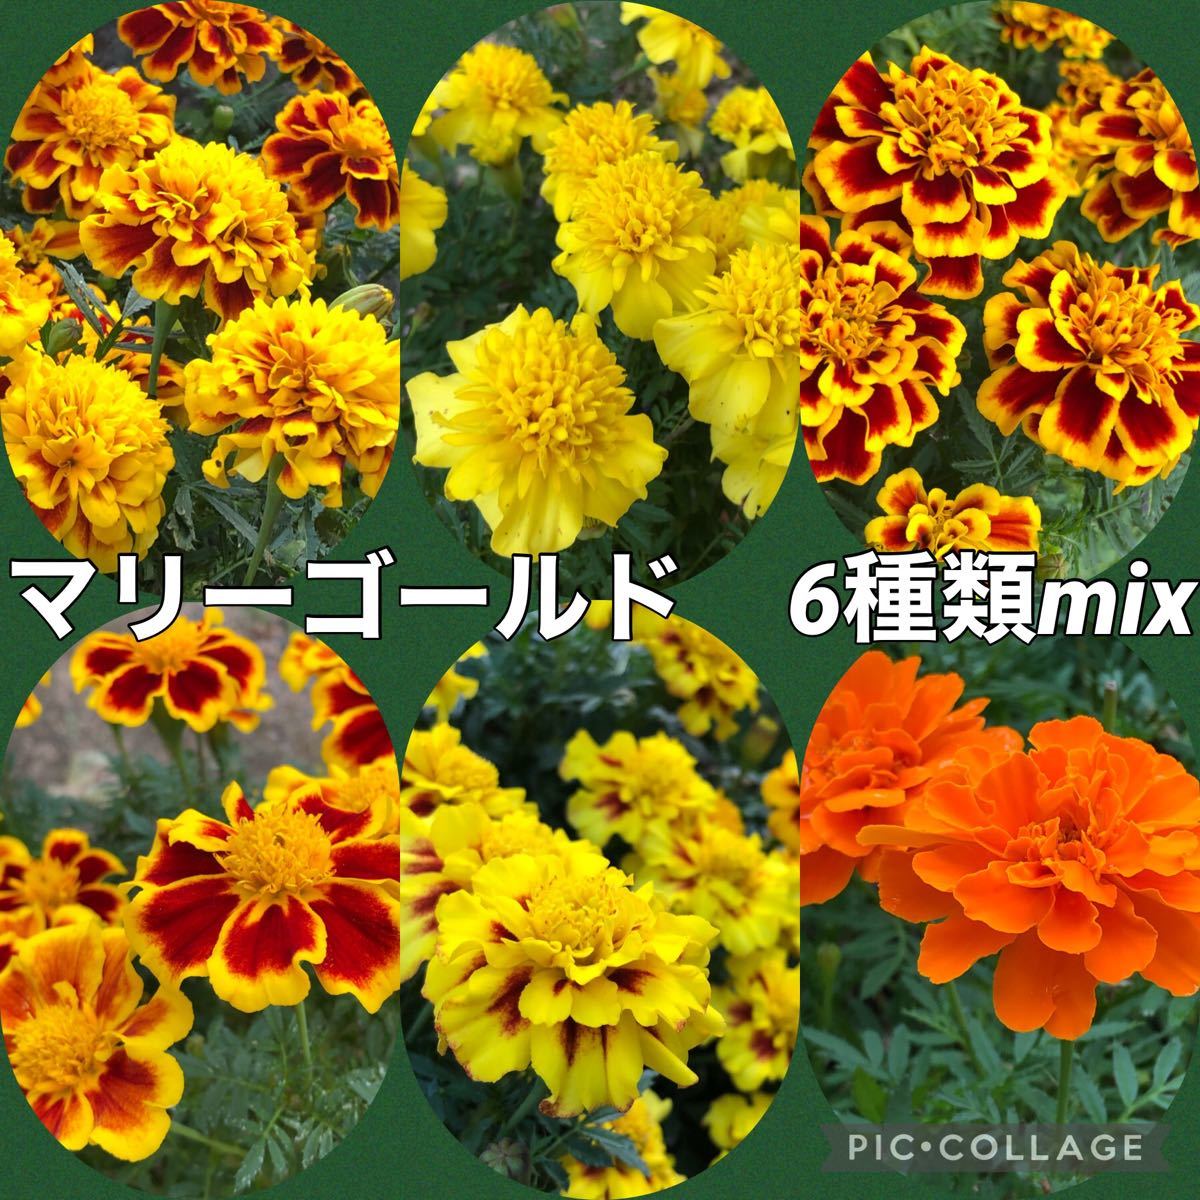 Paypayフリマ マリーゴールド 6種類ミックス 花の種